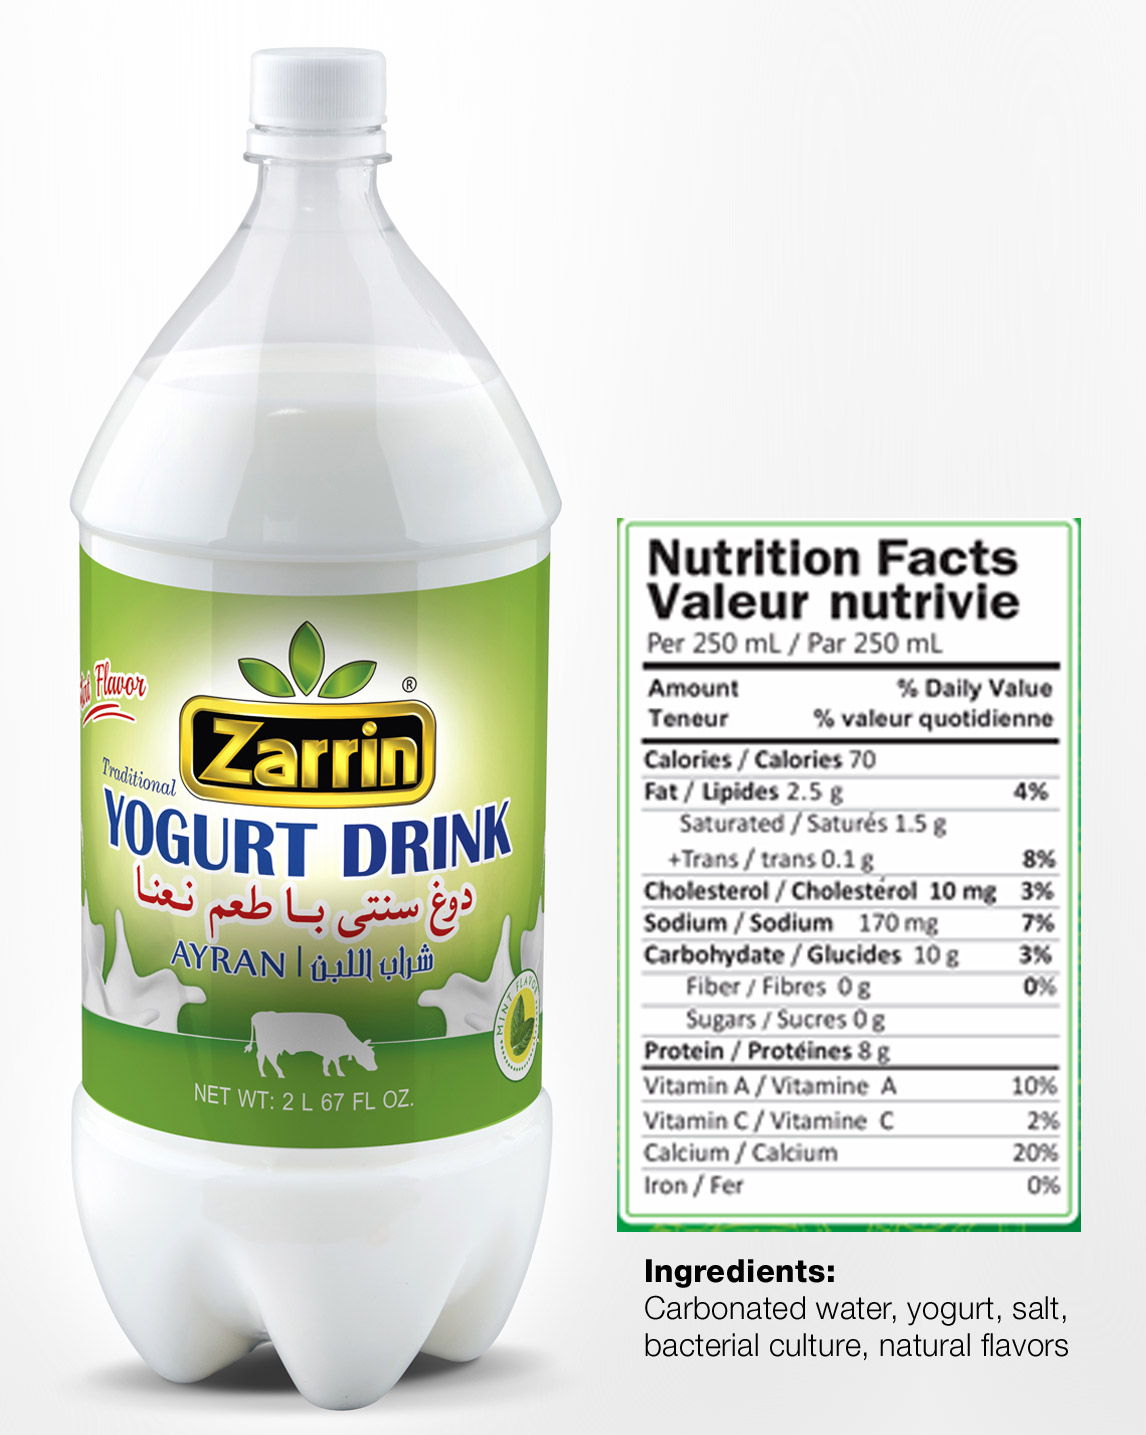 Zarrin mint flavor yogurt drink also known as doogh.